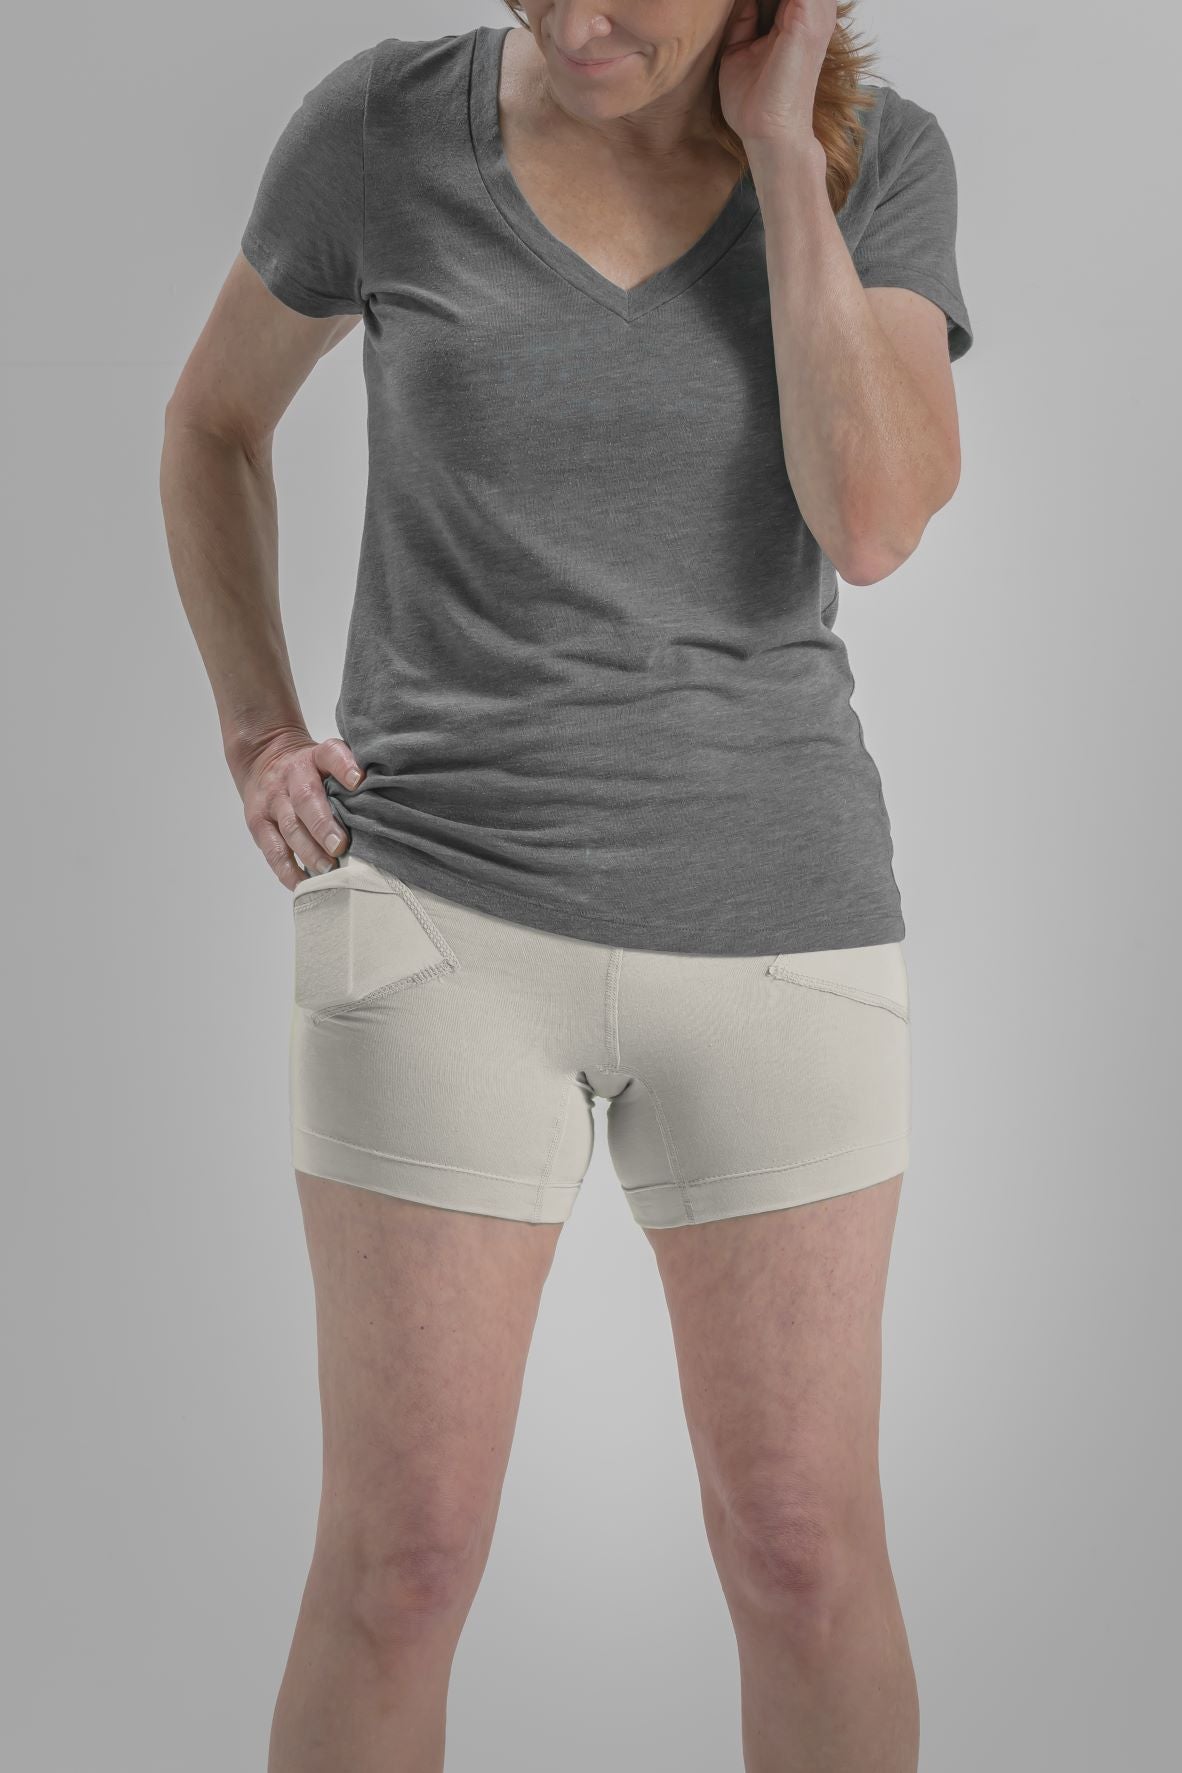 Women's Everyday Stretch Underwear with Insulin Pump Pockets